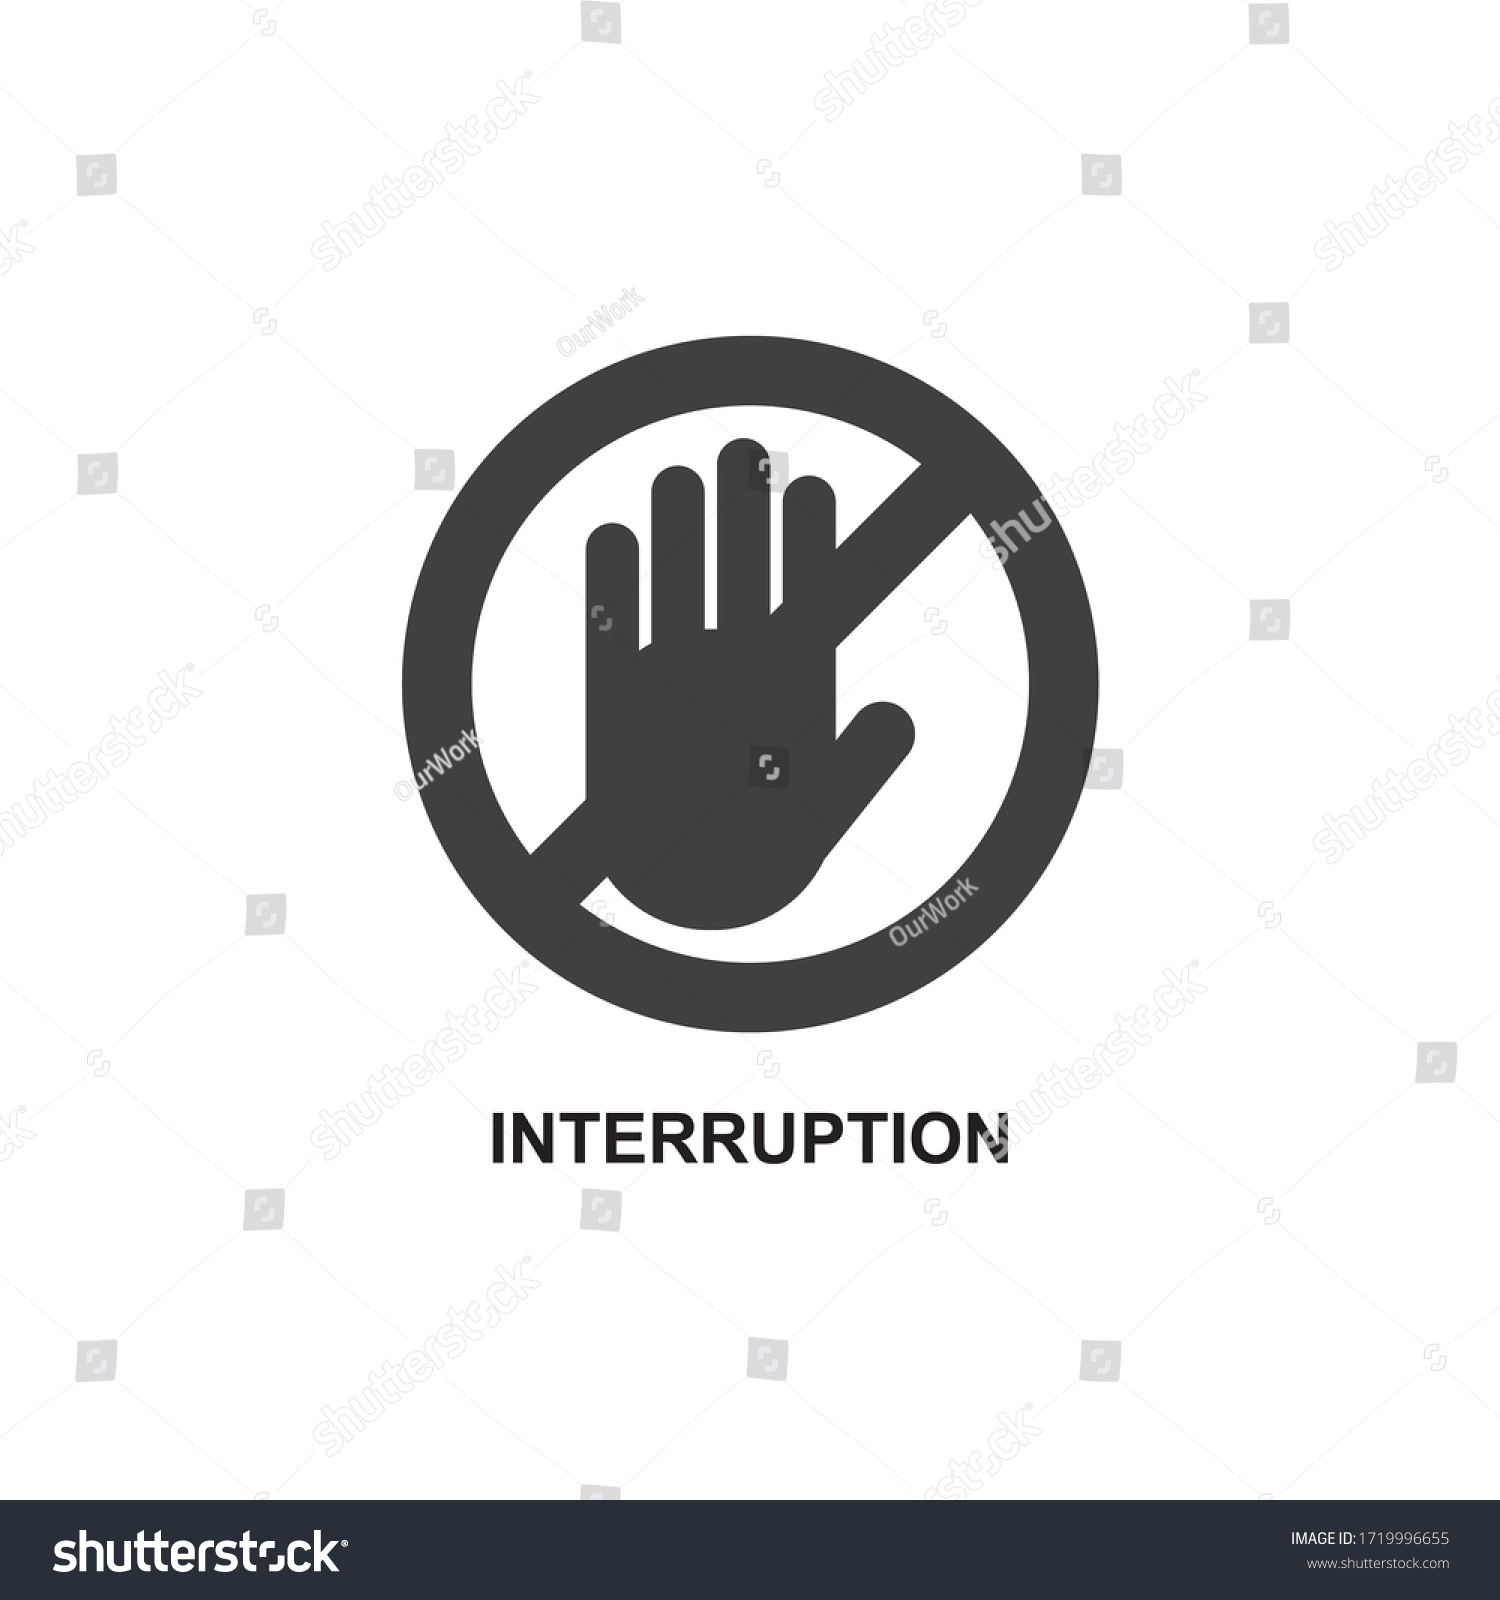 Service interruption